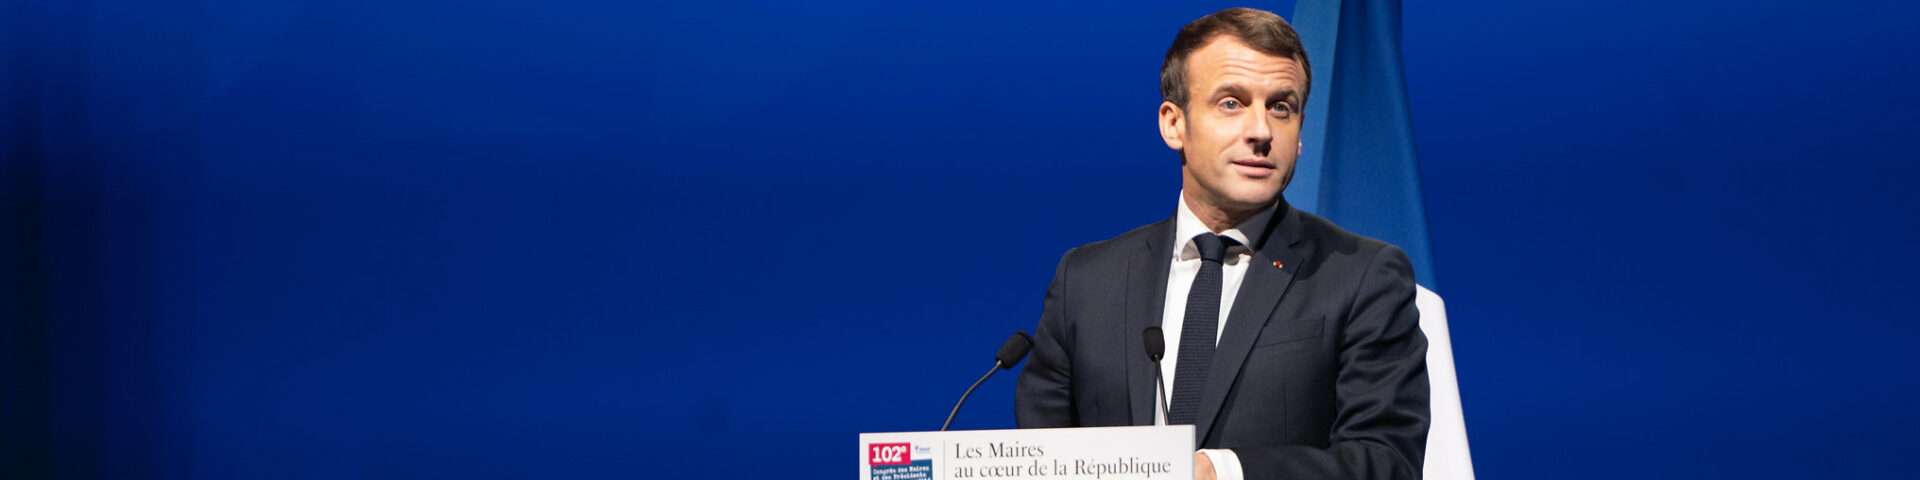 Macron au congrès des maires